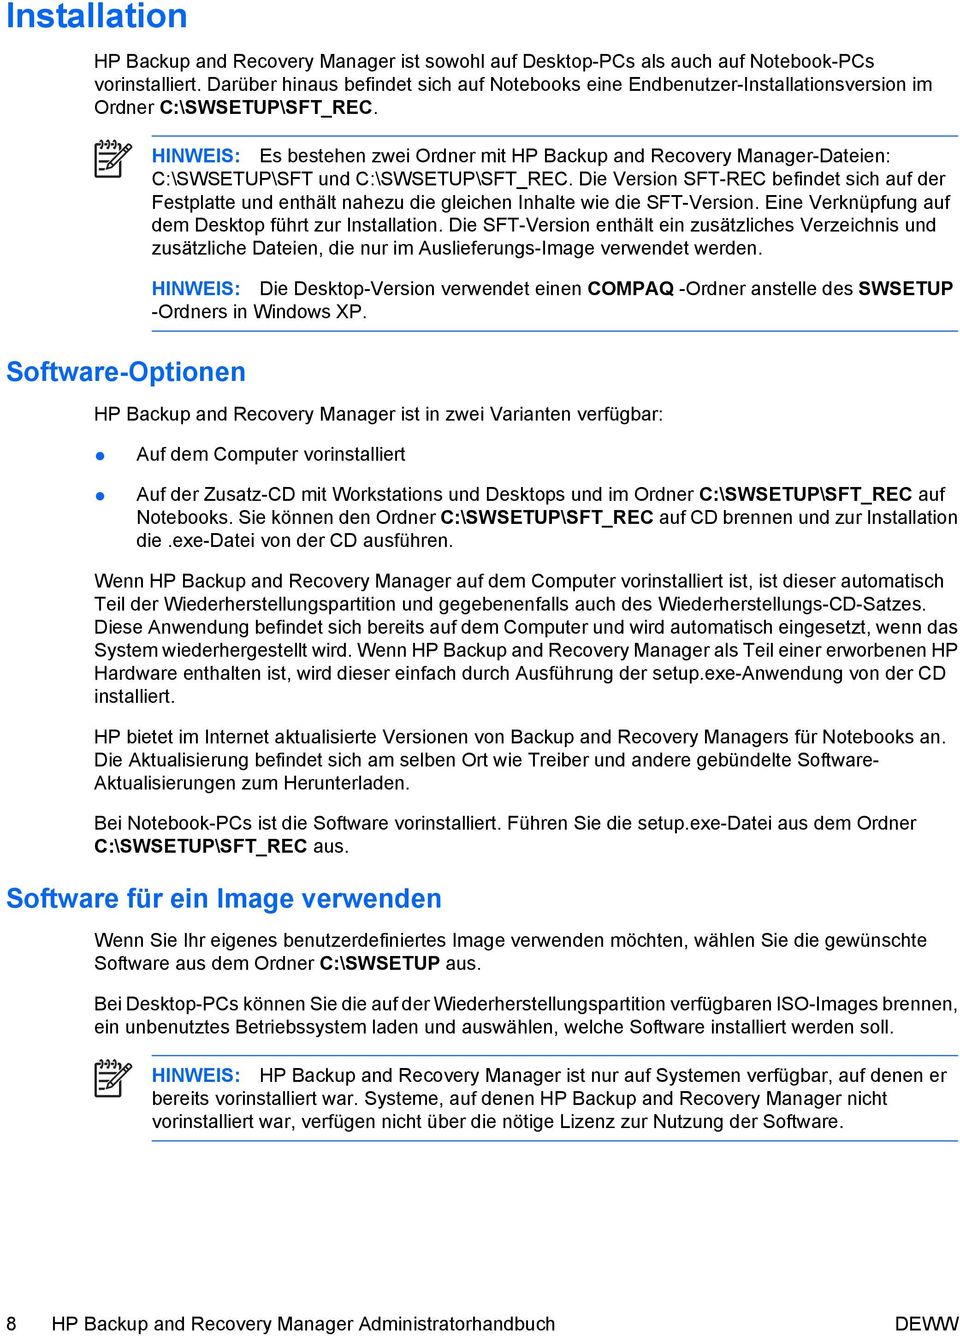 Software-Optionen HINWEIS: Es bestehen zwei Ordner mit HP Backup and Recovery Manager-Dateien: C:\SWSETUP\SFT und C:\SWSETUP\SFT_REC.